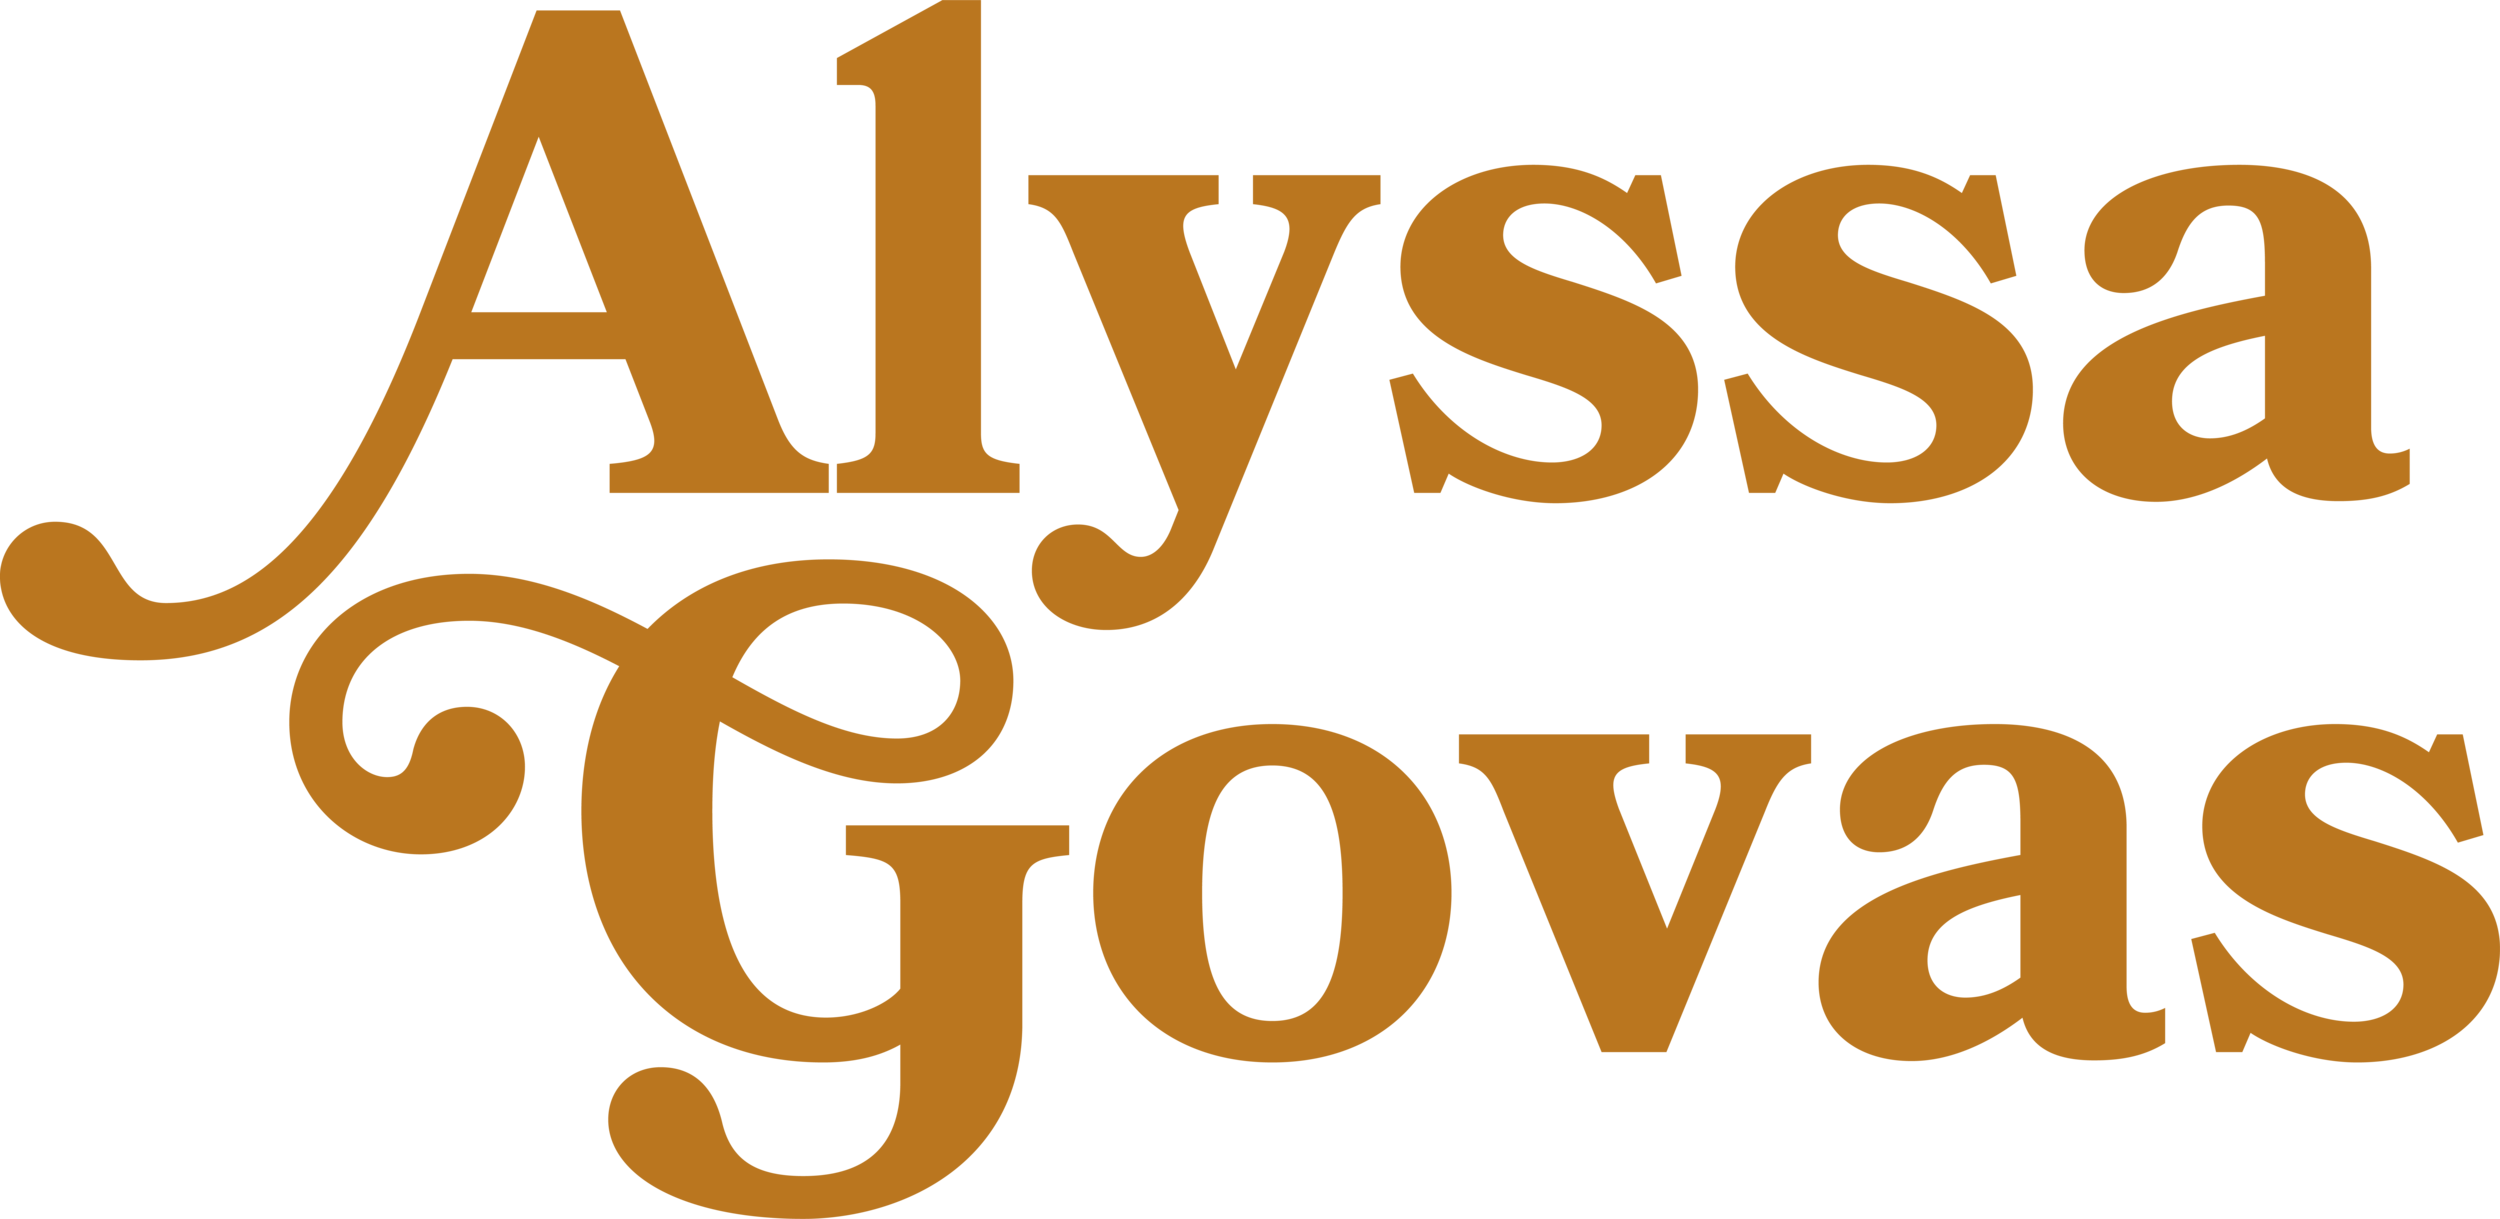 Alyssa Govas